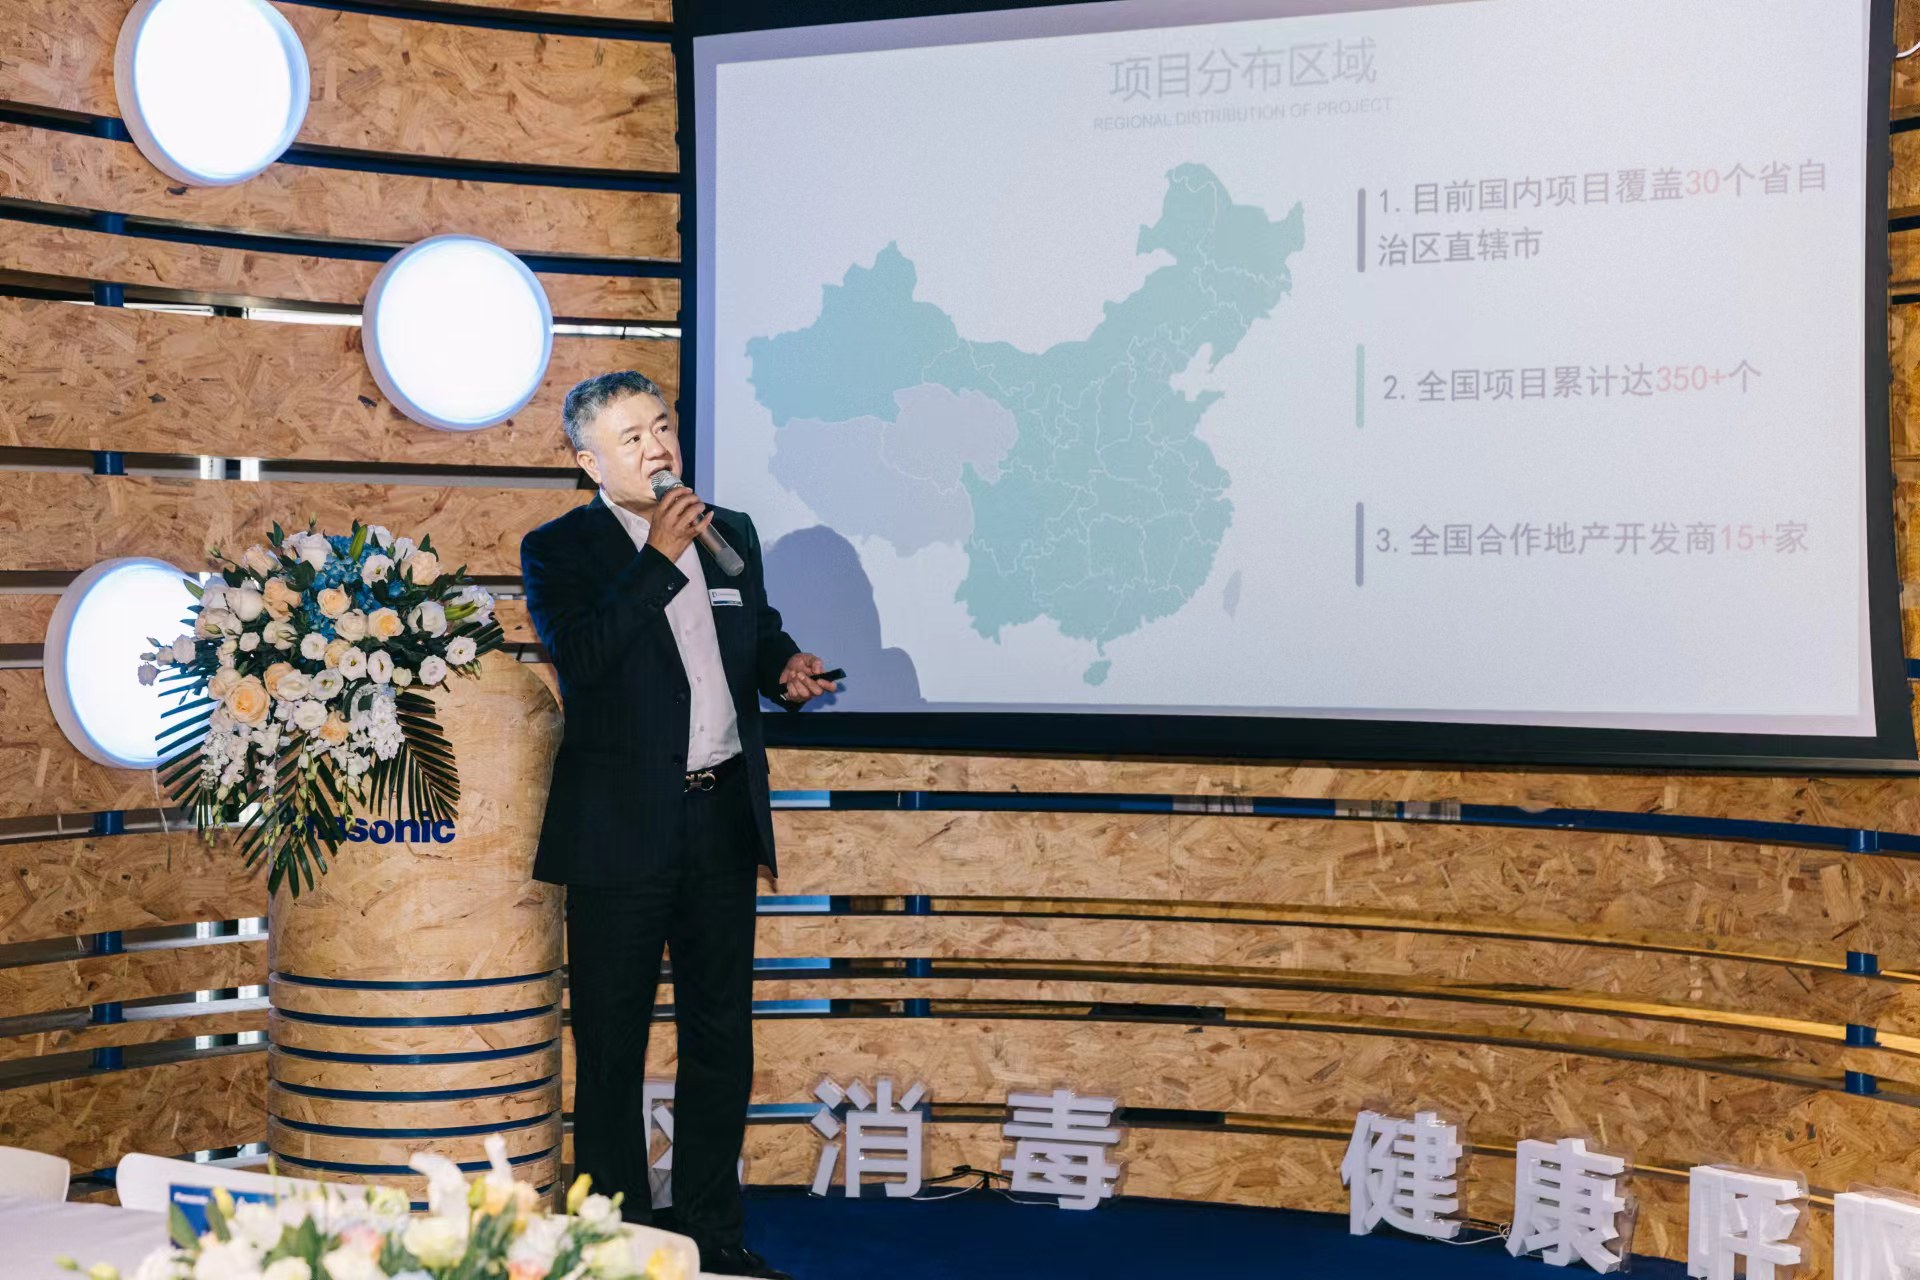 上海沅达、上海东津与松下电气签订战略合作协议